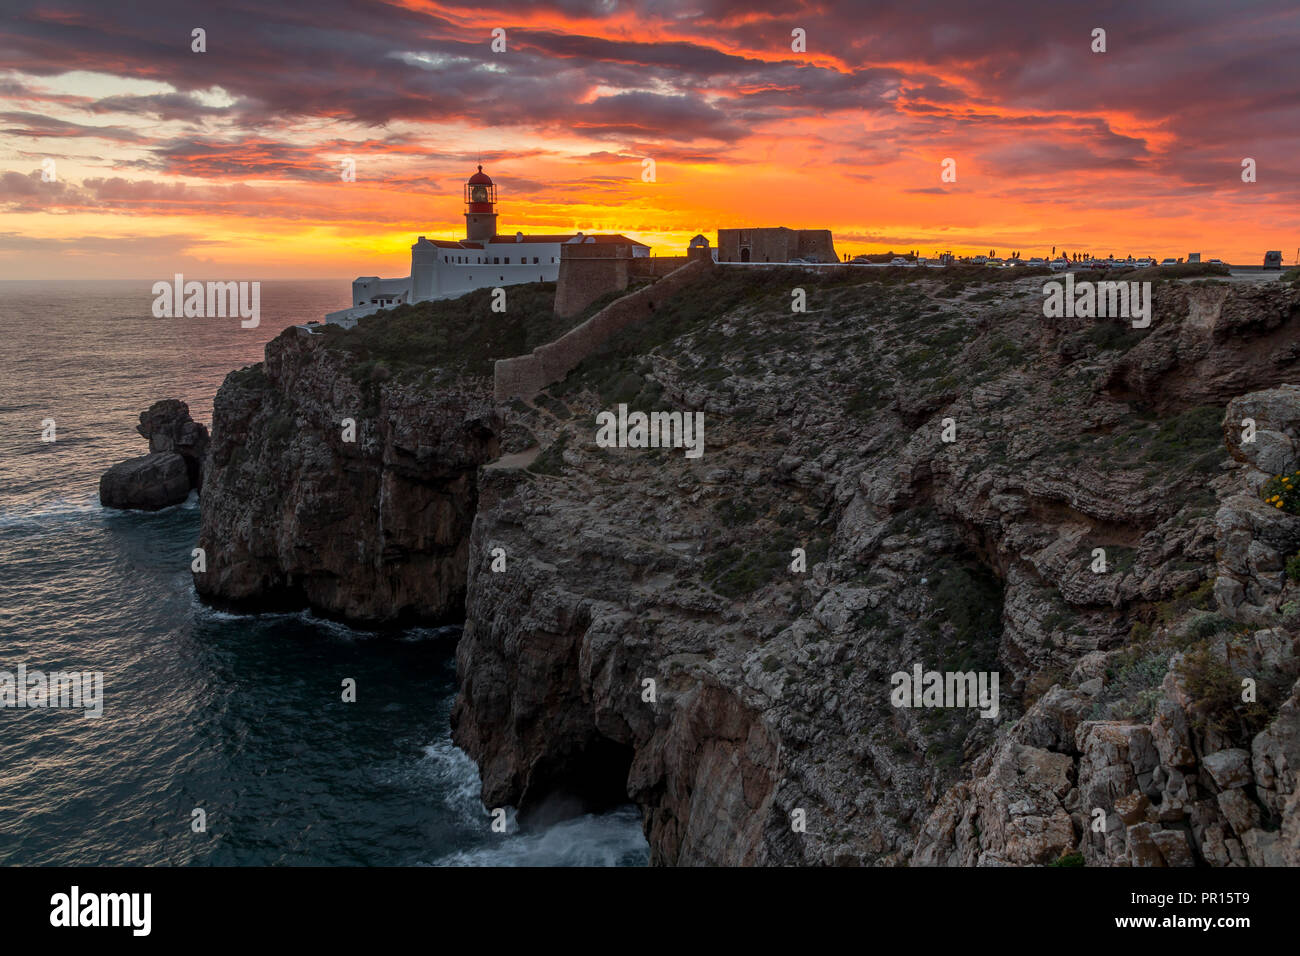 Le phare du Cap Saint-Vincent au coucher du soleil, Sagres, Algarve, Portugal, Europe Banque D'Images